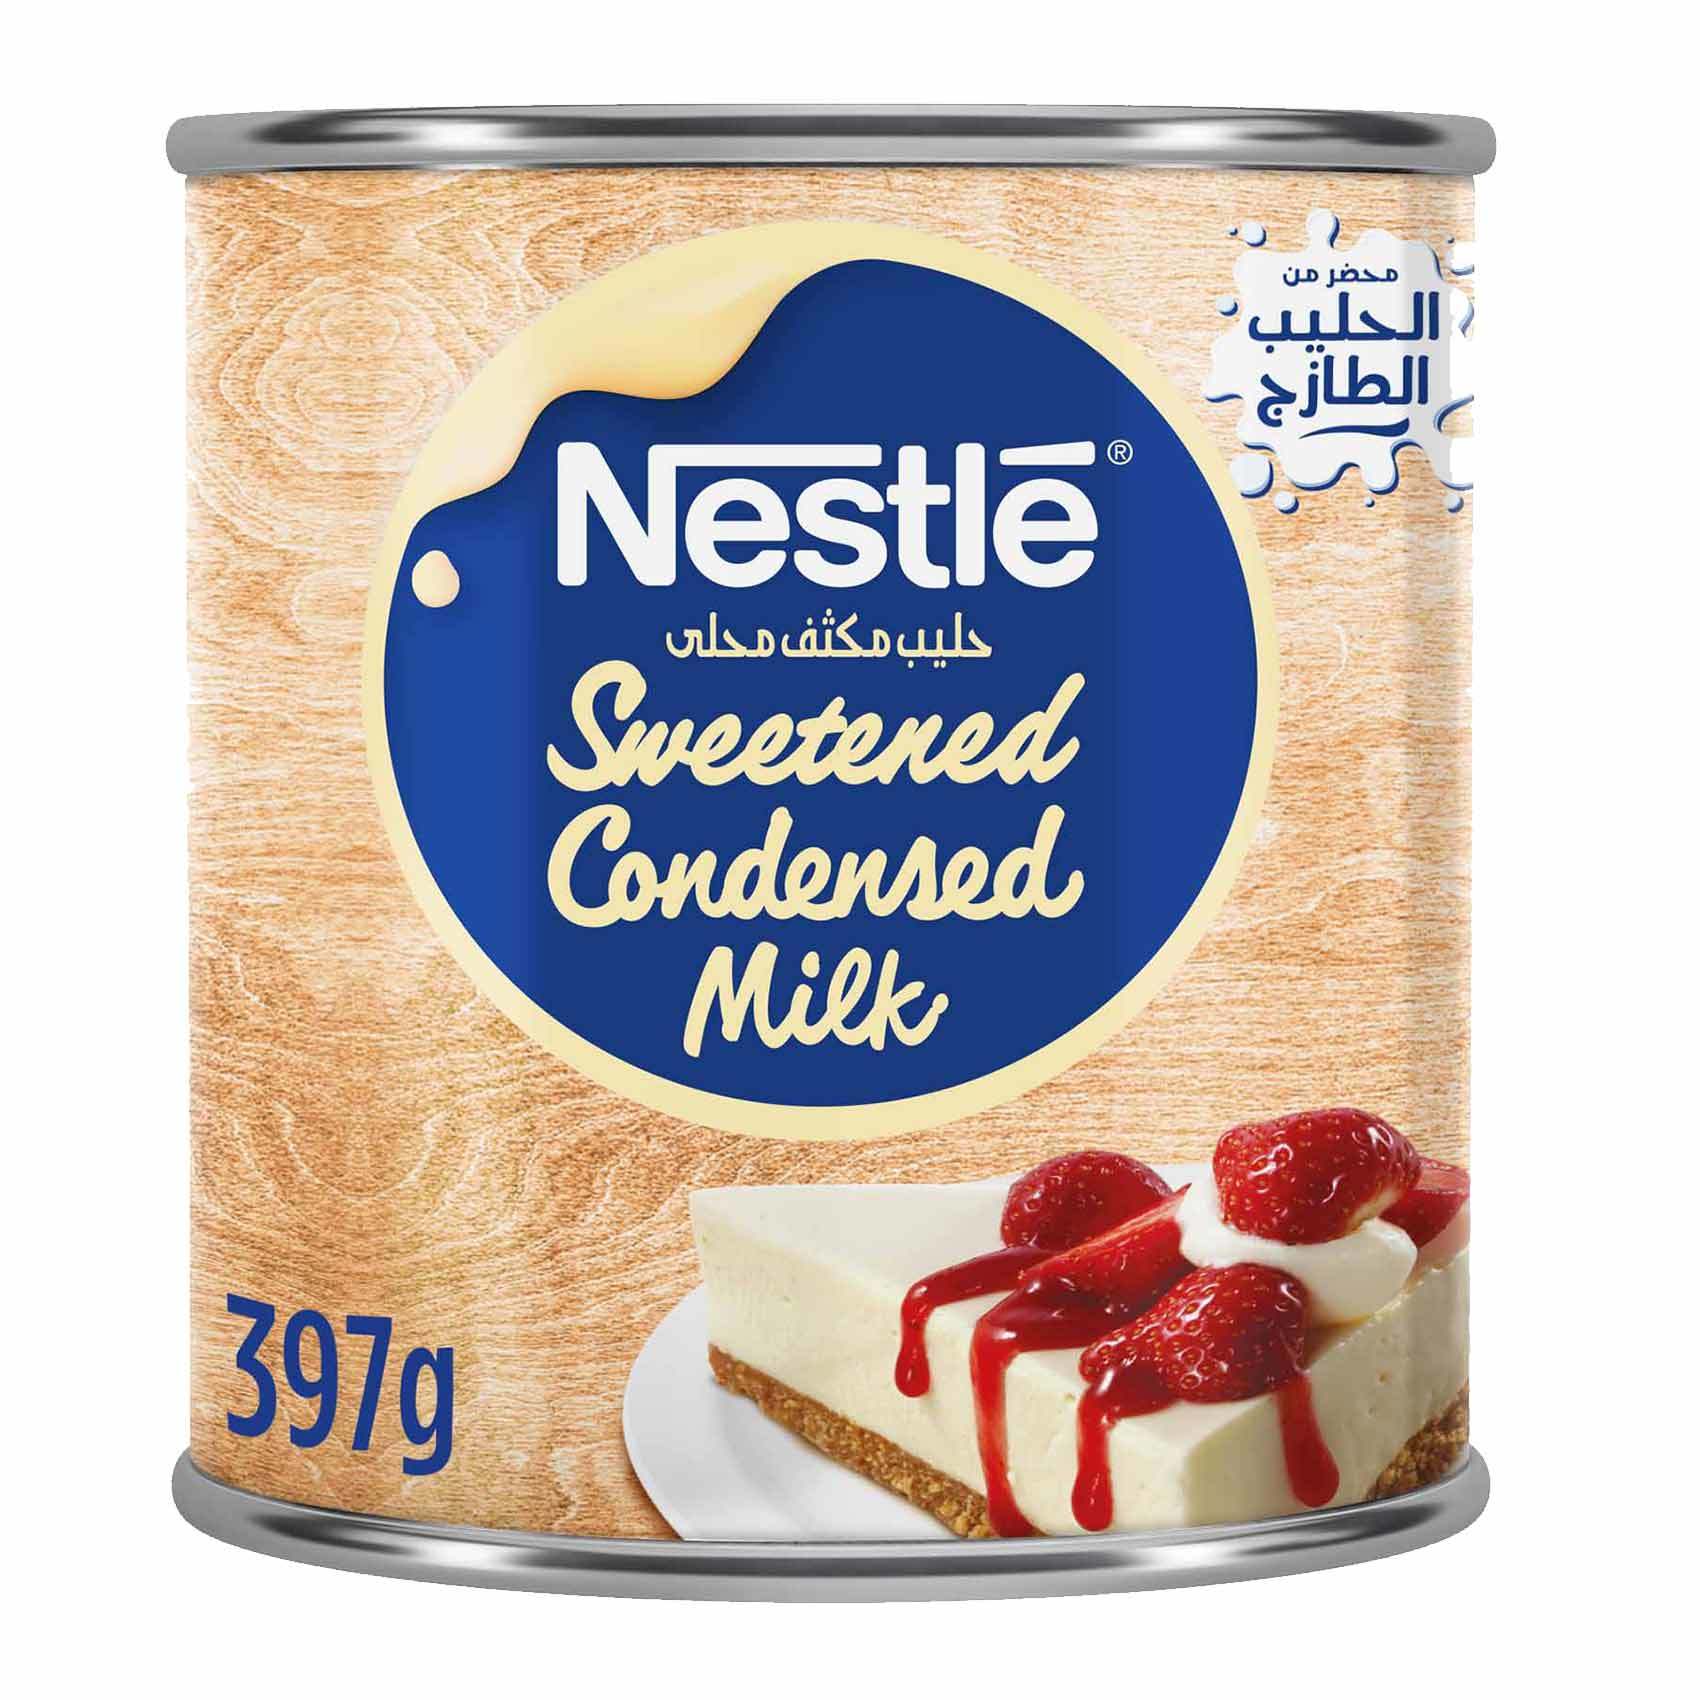 Buy Sweetened Condensed Milk 397 G Online Shop Food Cupboard On Carrefour Saudi Arabia